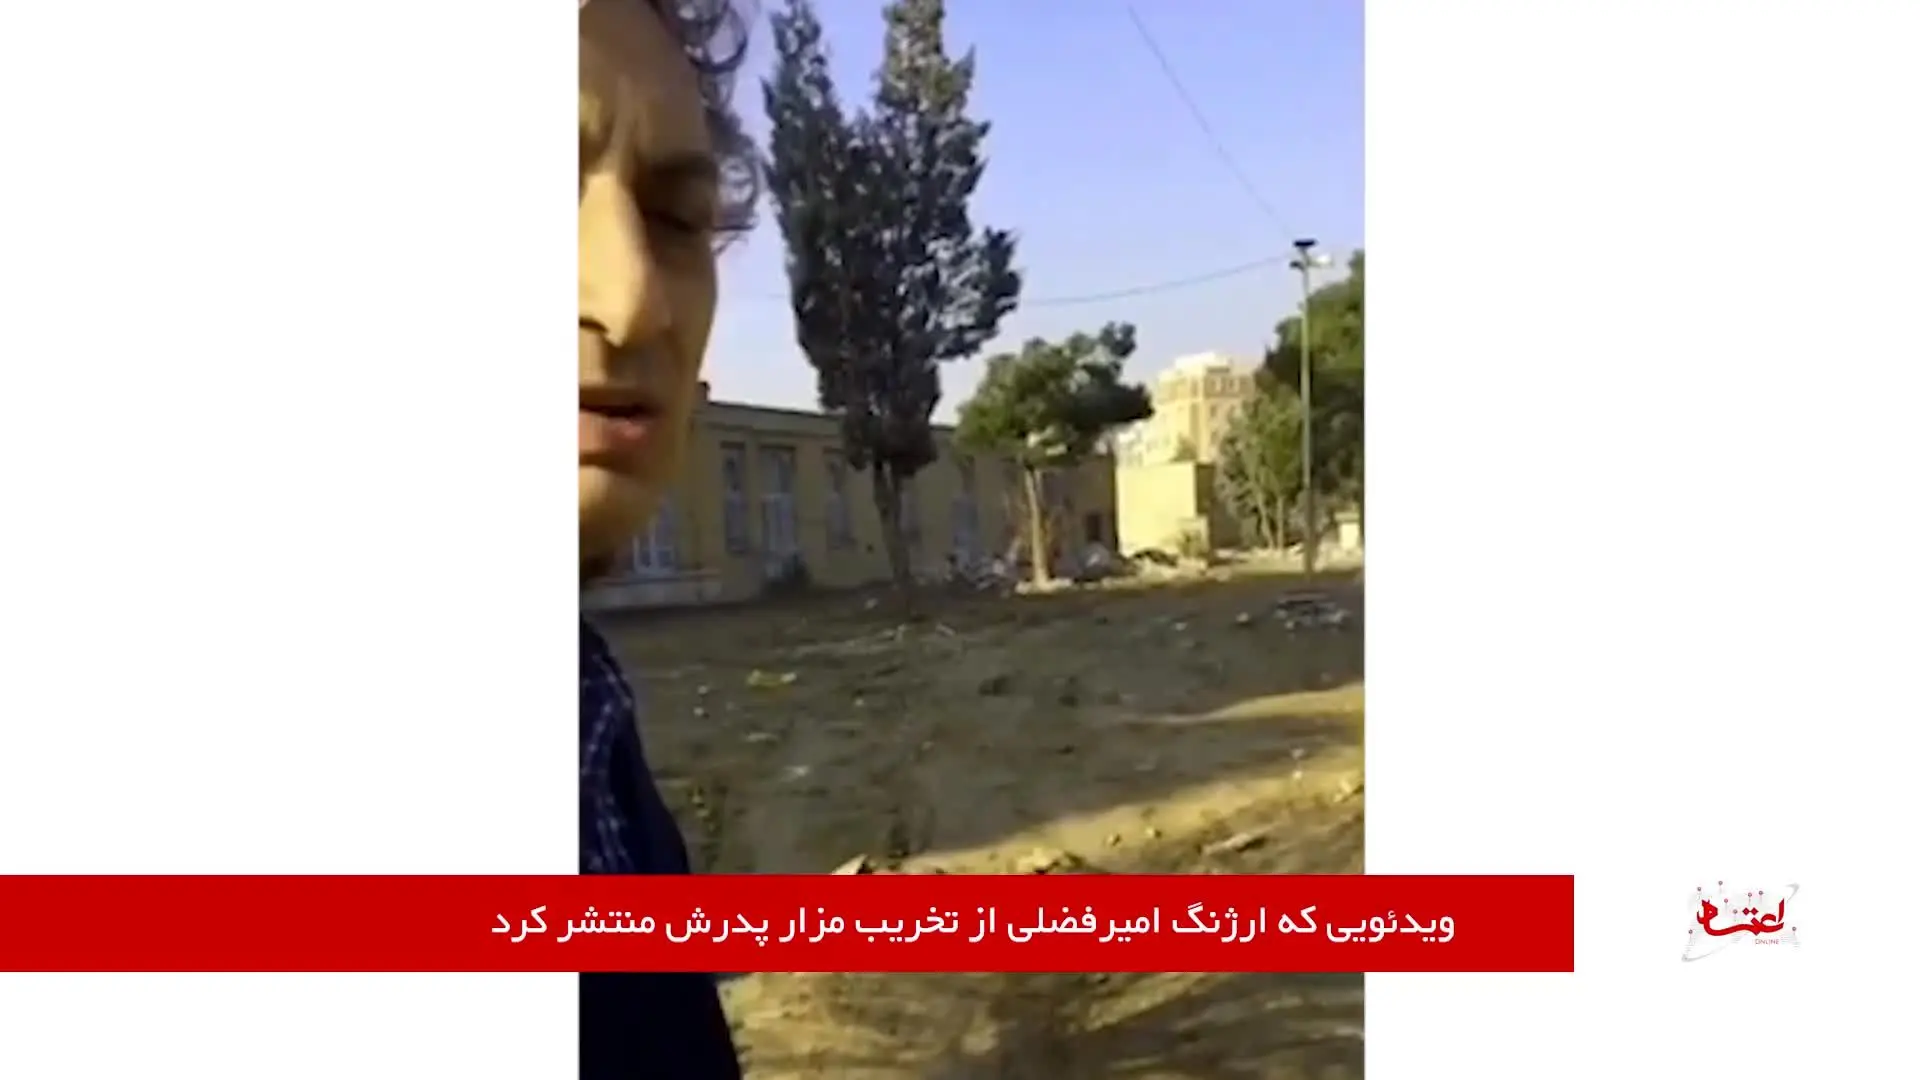 ویدئویی که ارژنگ امیرفضلی از تخریب مزار پدرش منتشر کرد